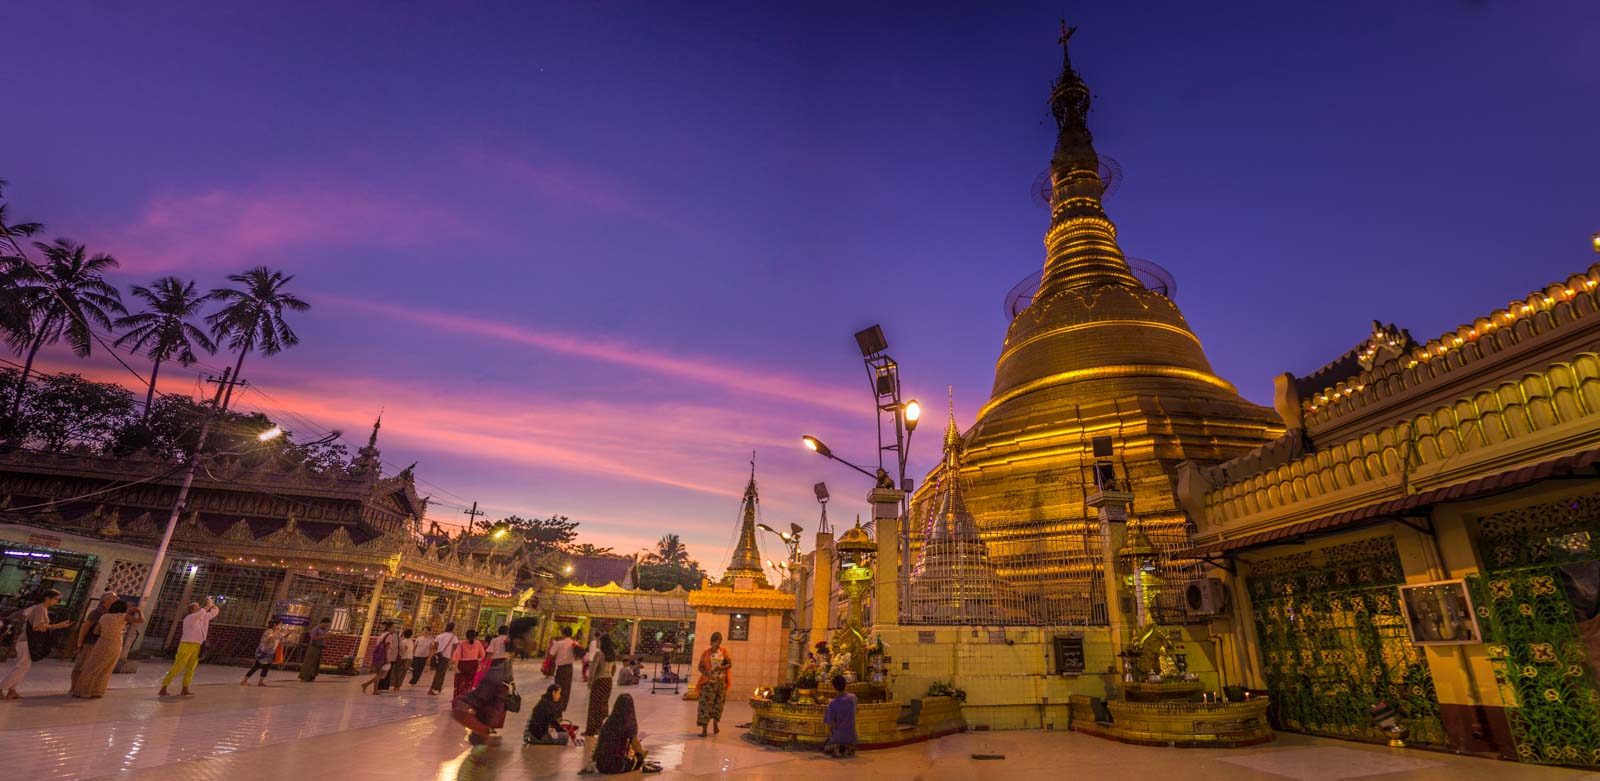 Yangon - Bago - Thanlyin 4 days